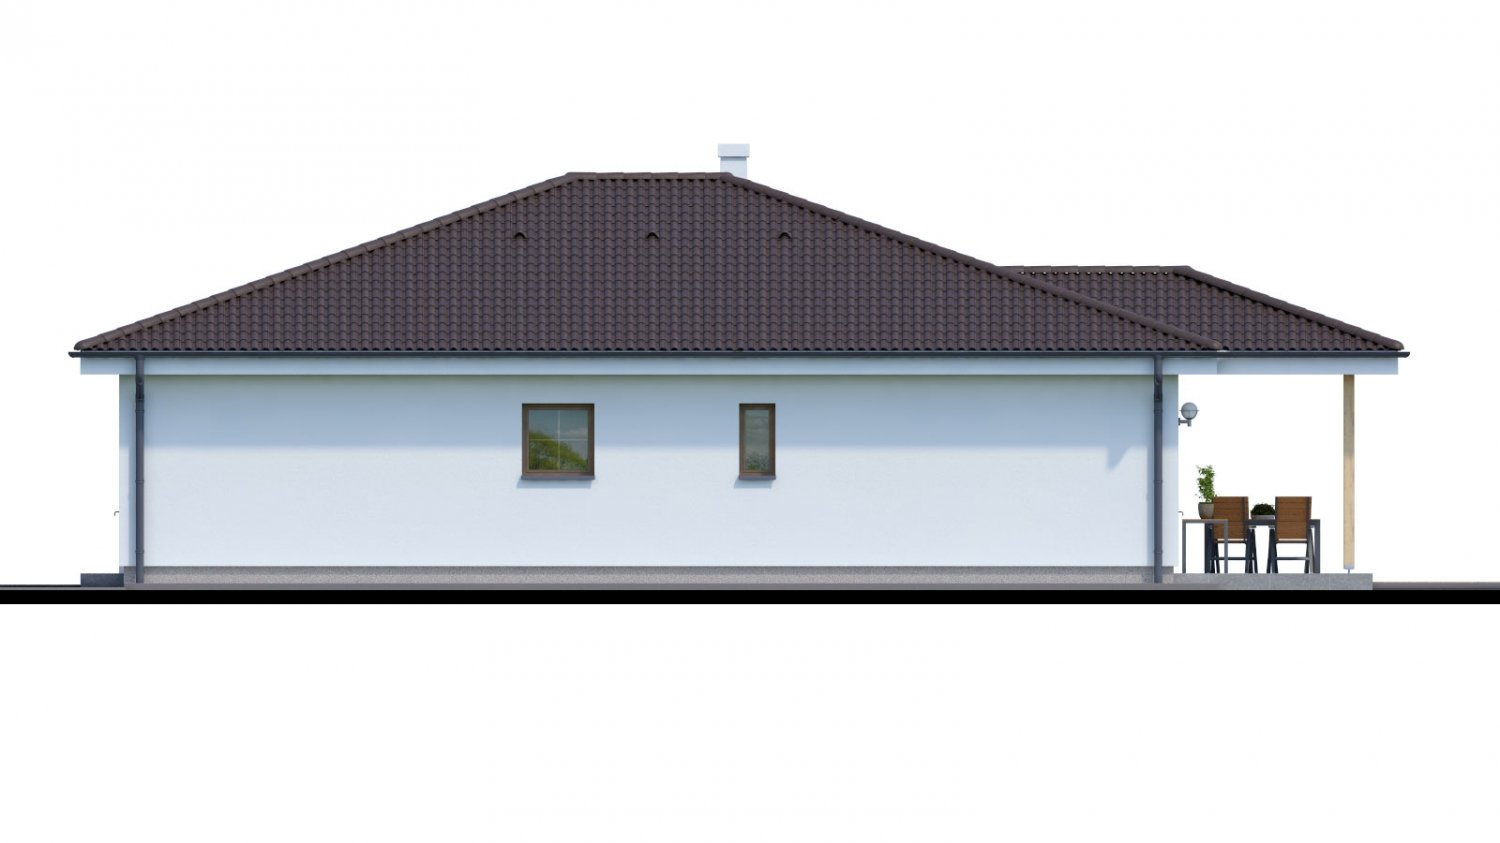 Pohľad 2. - Jednoduchý 5-pokojový rodinný dům s valbovou střechou. Zpracovaný i ve virtuální realitě 3d.